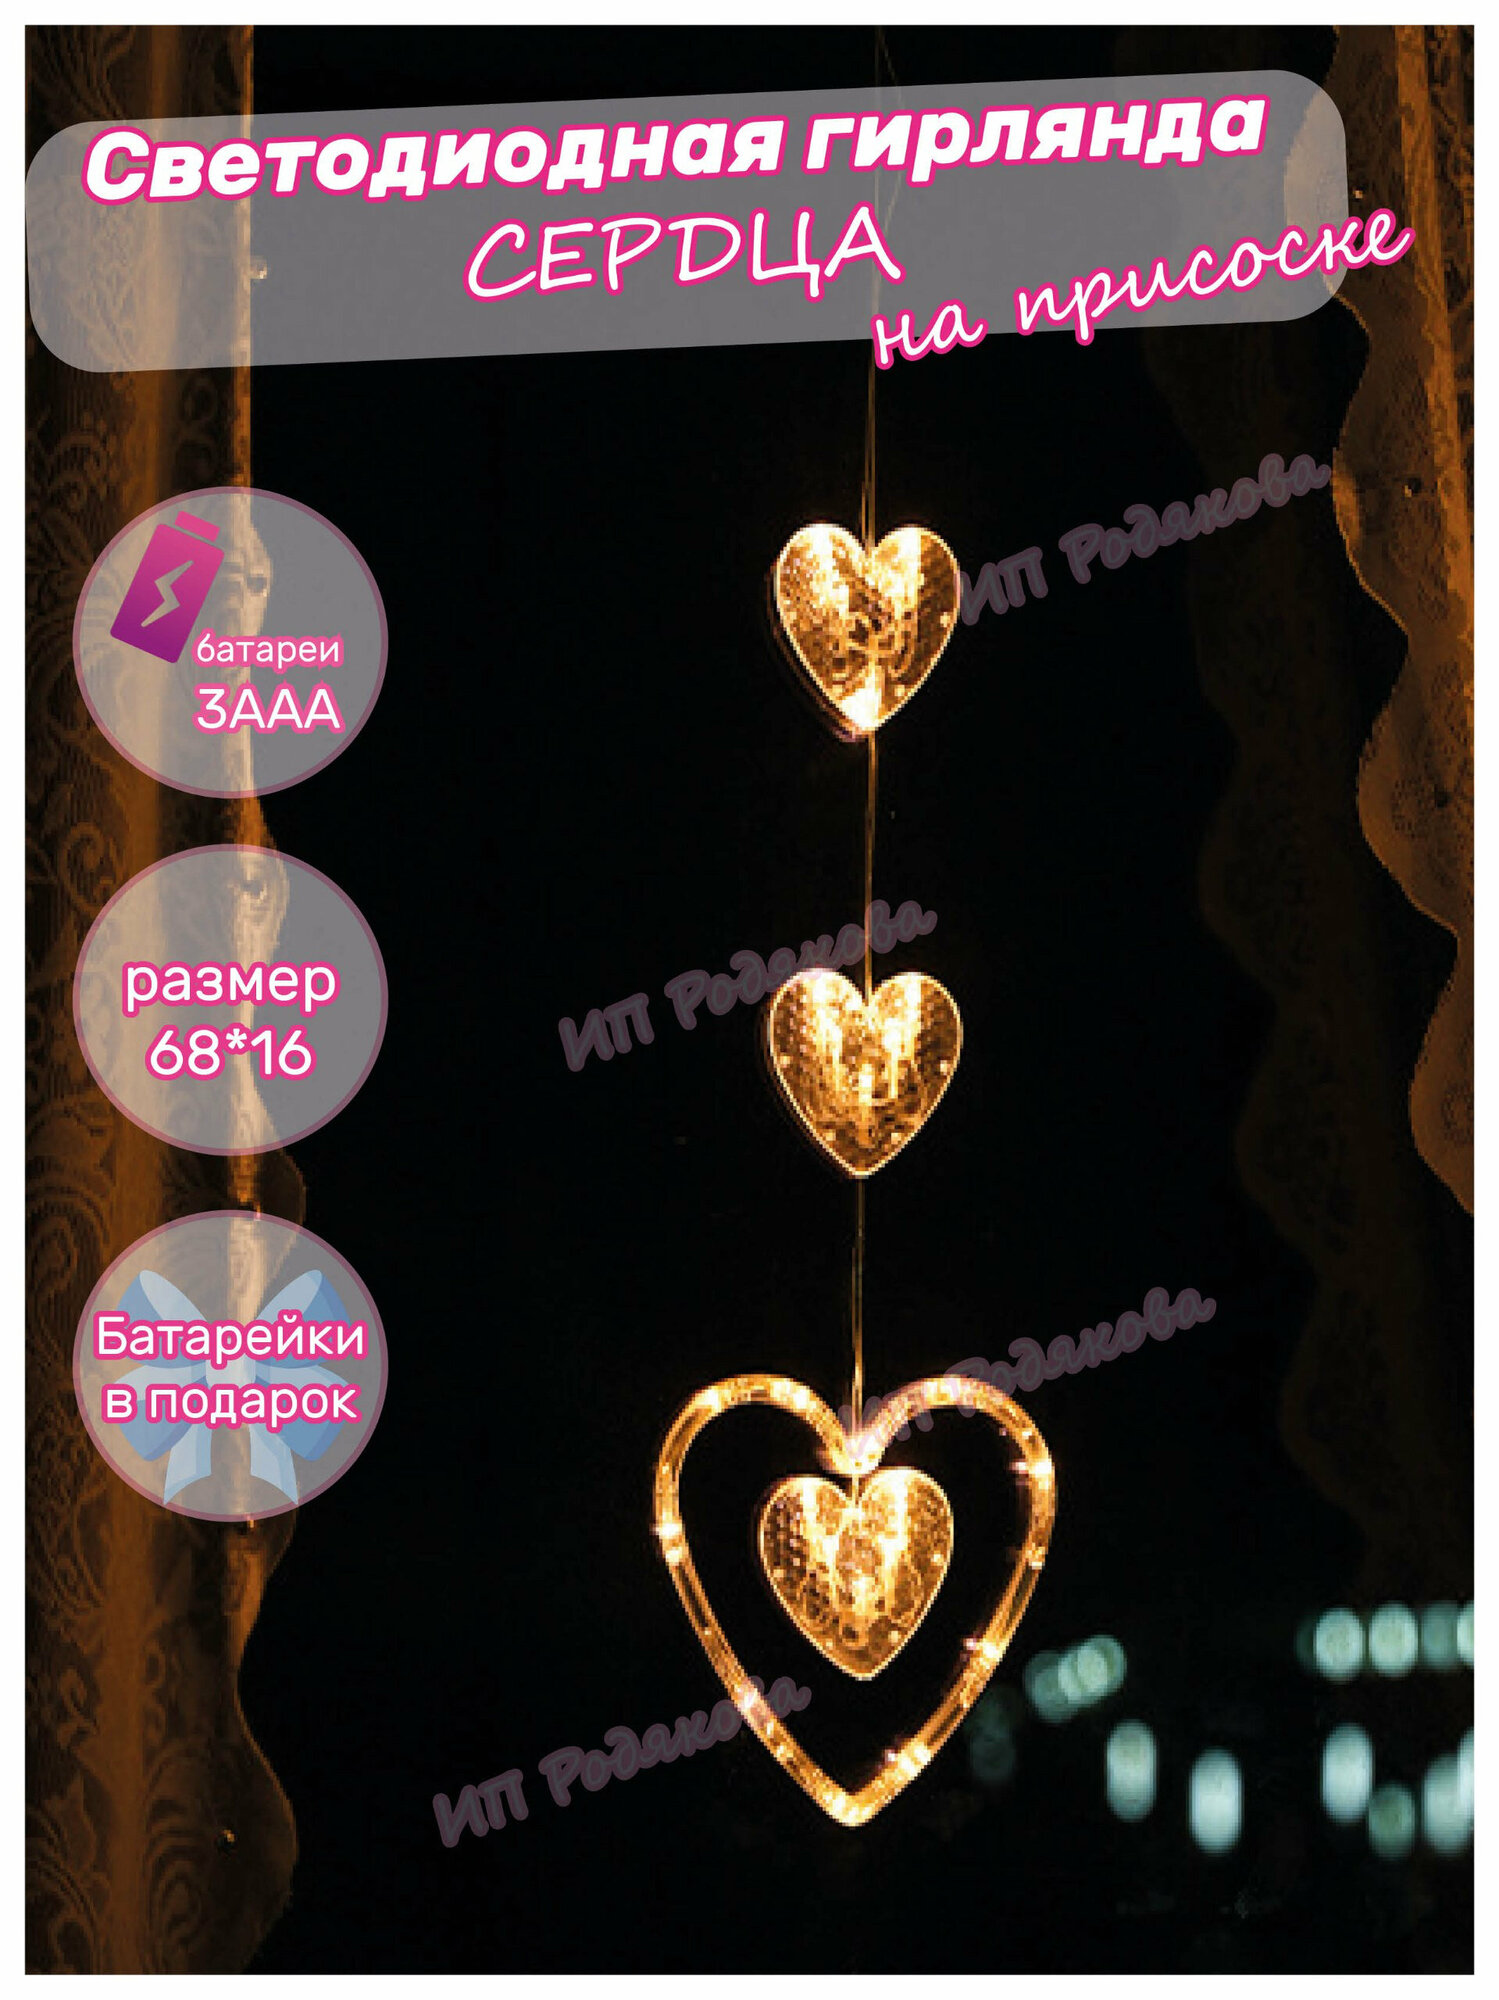 Электрогирлянда светодиодная Сердце тройная гирлянда на присоске День Святого Валентина 3 батарейки AAA в подарок 1 шт